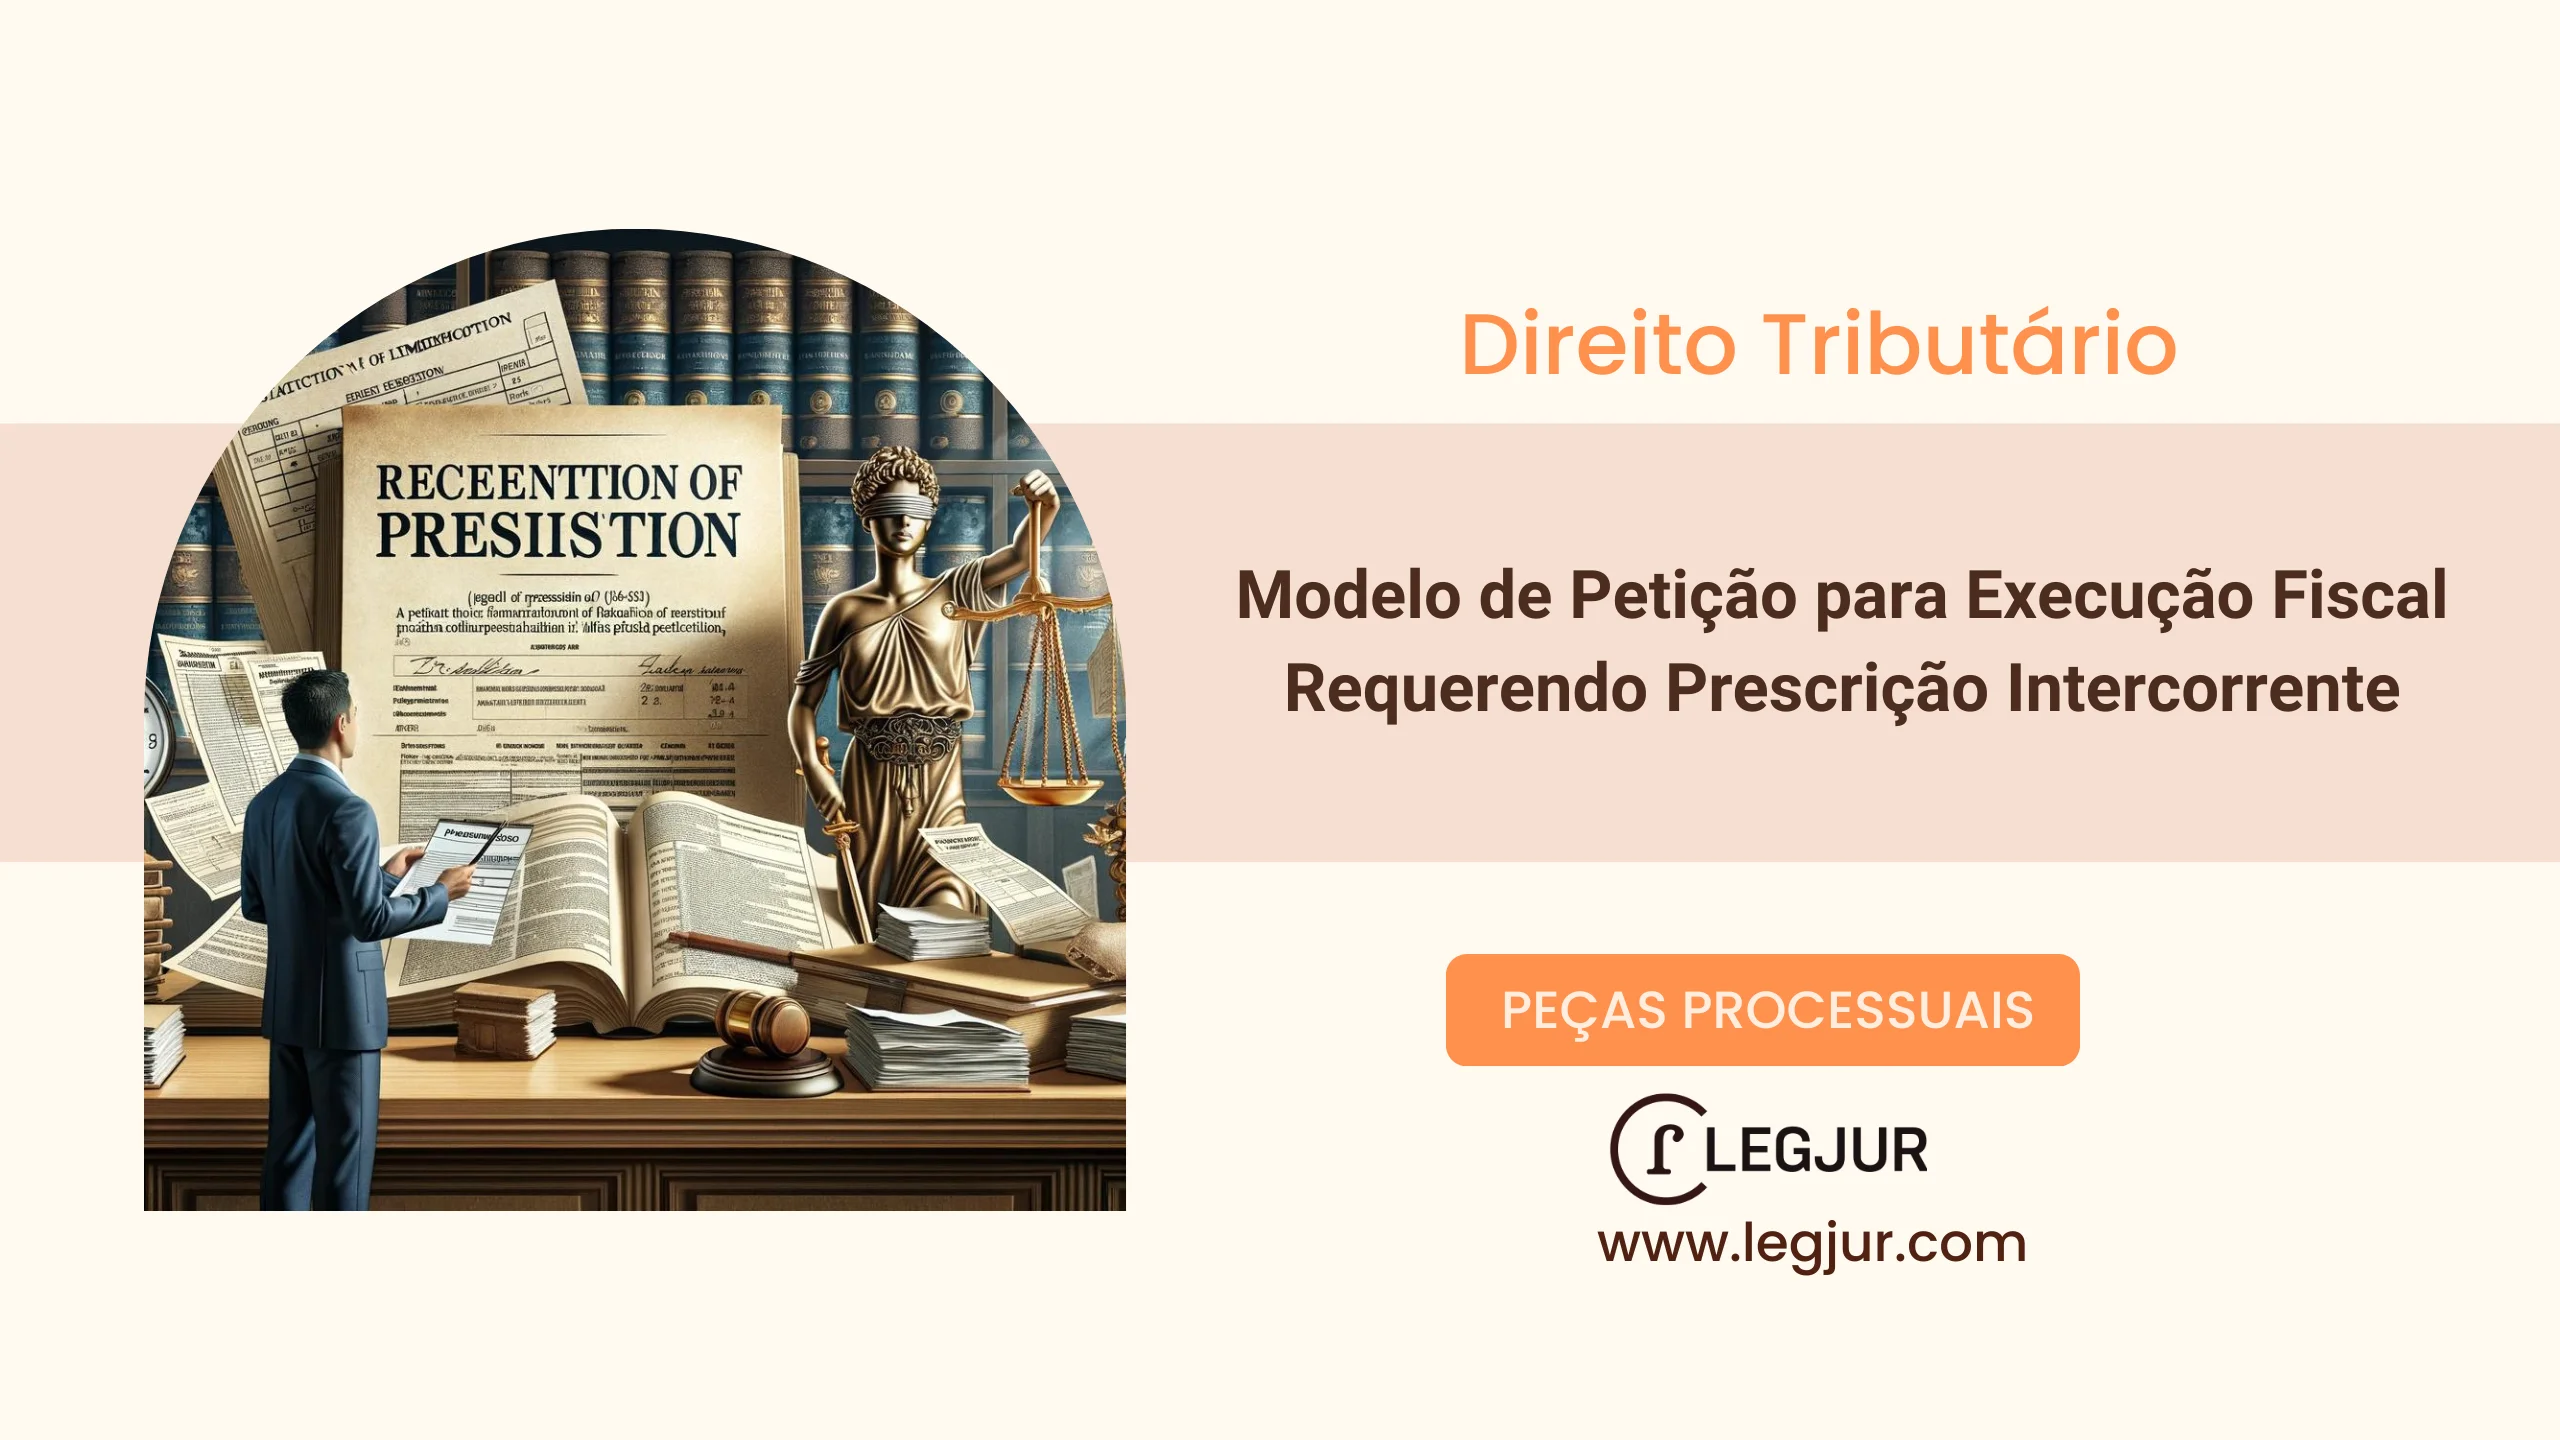 Modelo de Petição para Execução Fiscal Requerendo Prescrição Intercorrente